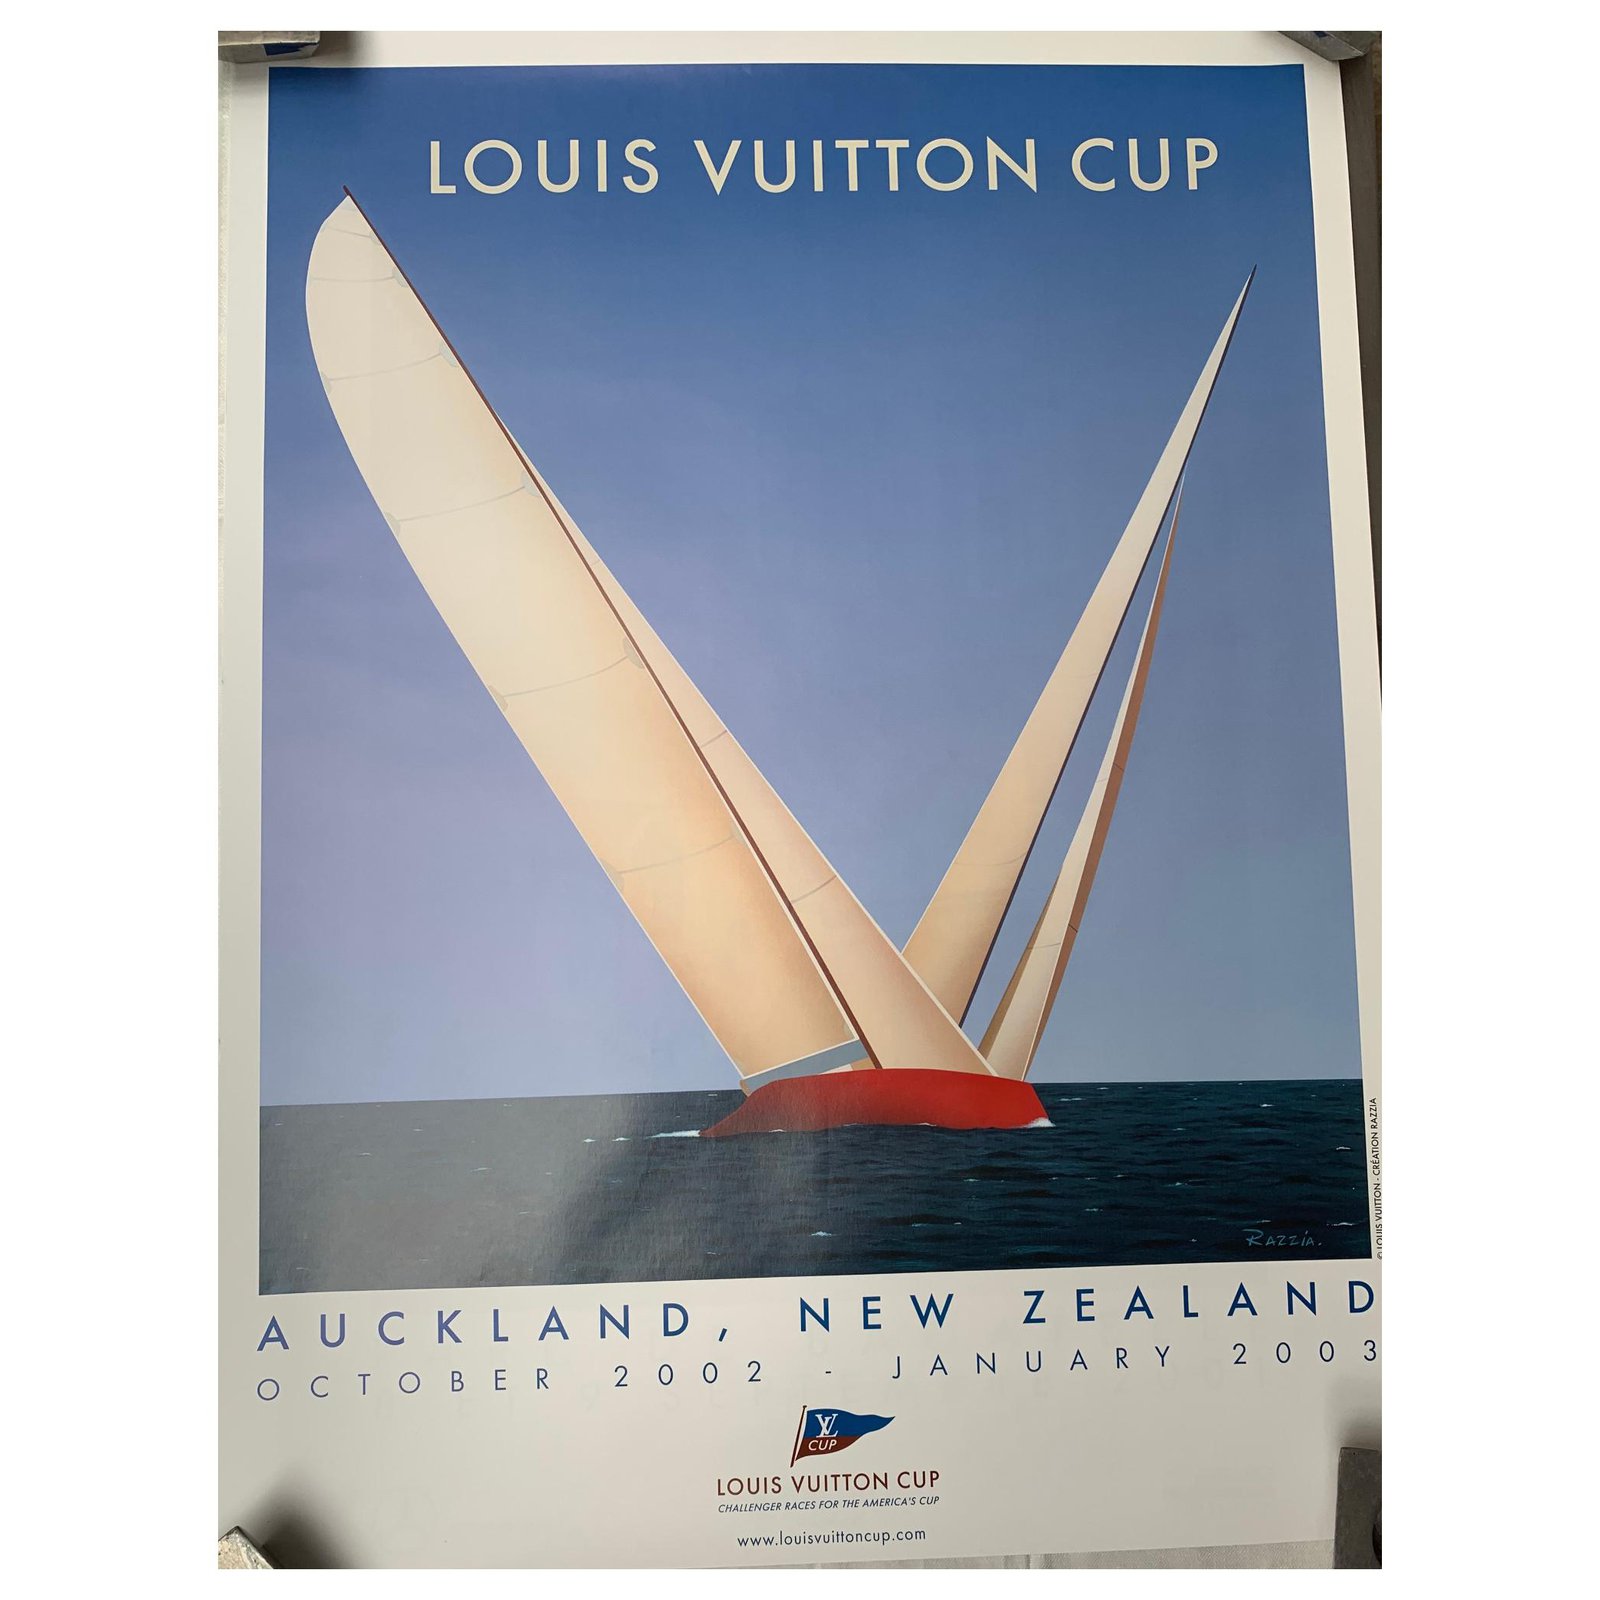 Louis Vuitton Cup, beautiful